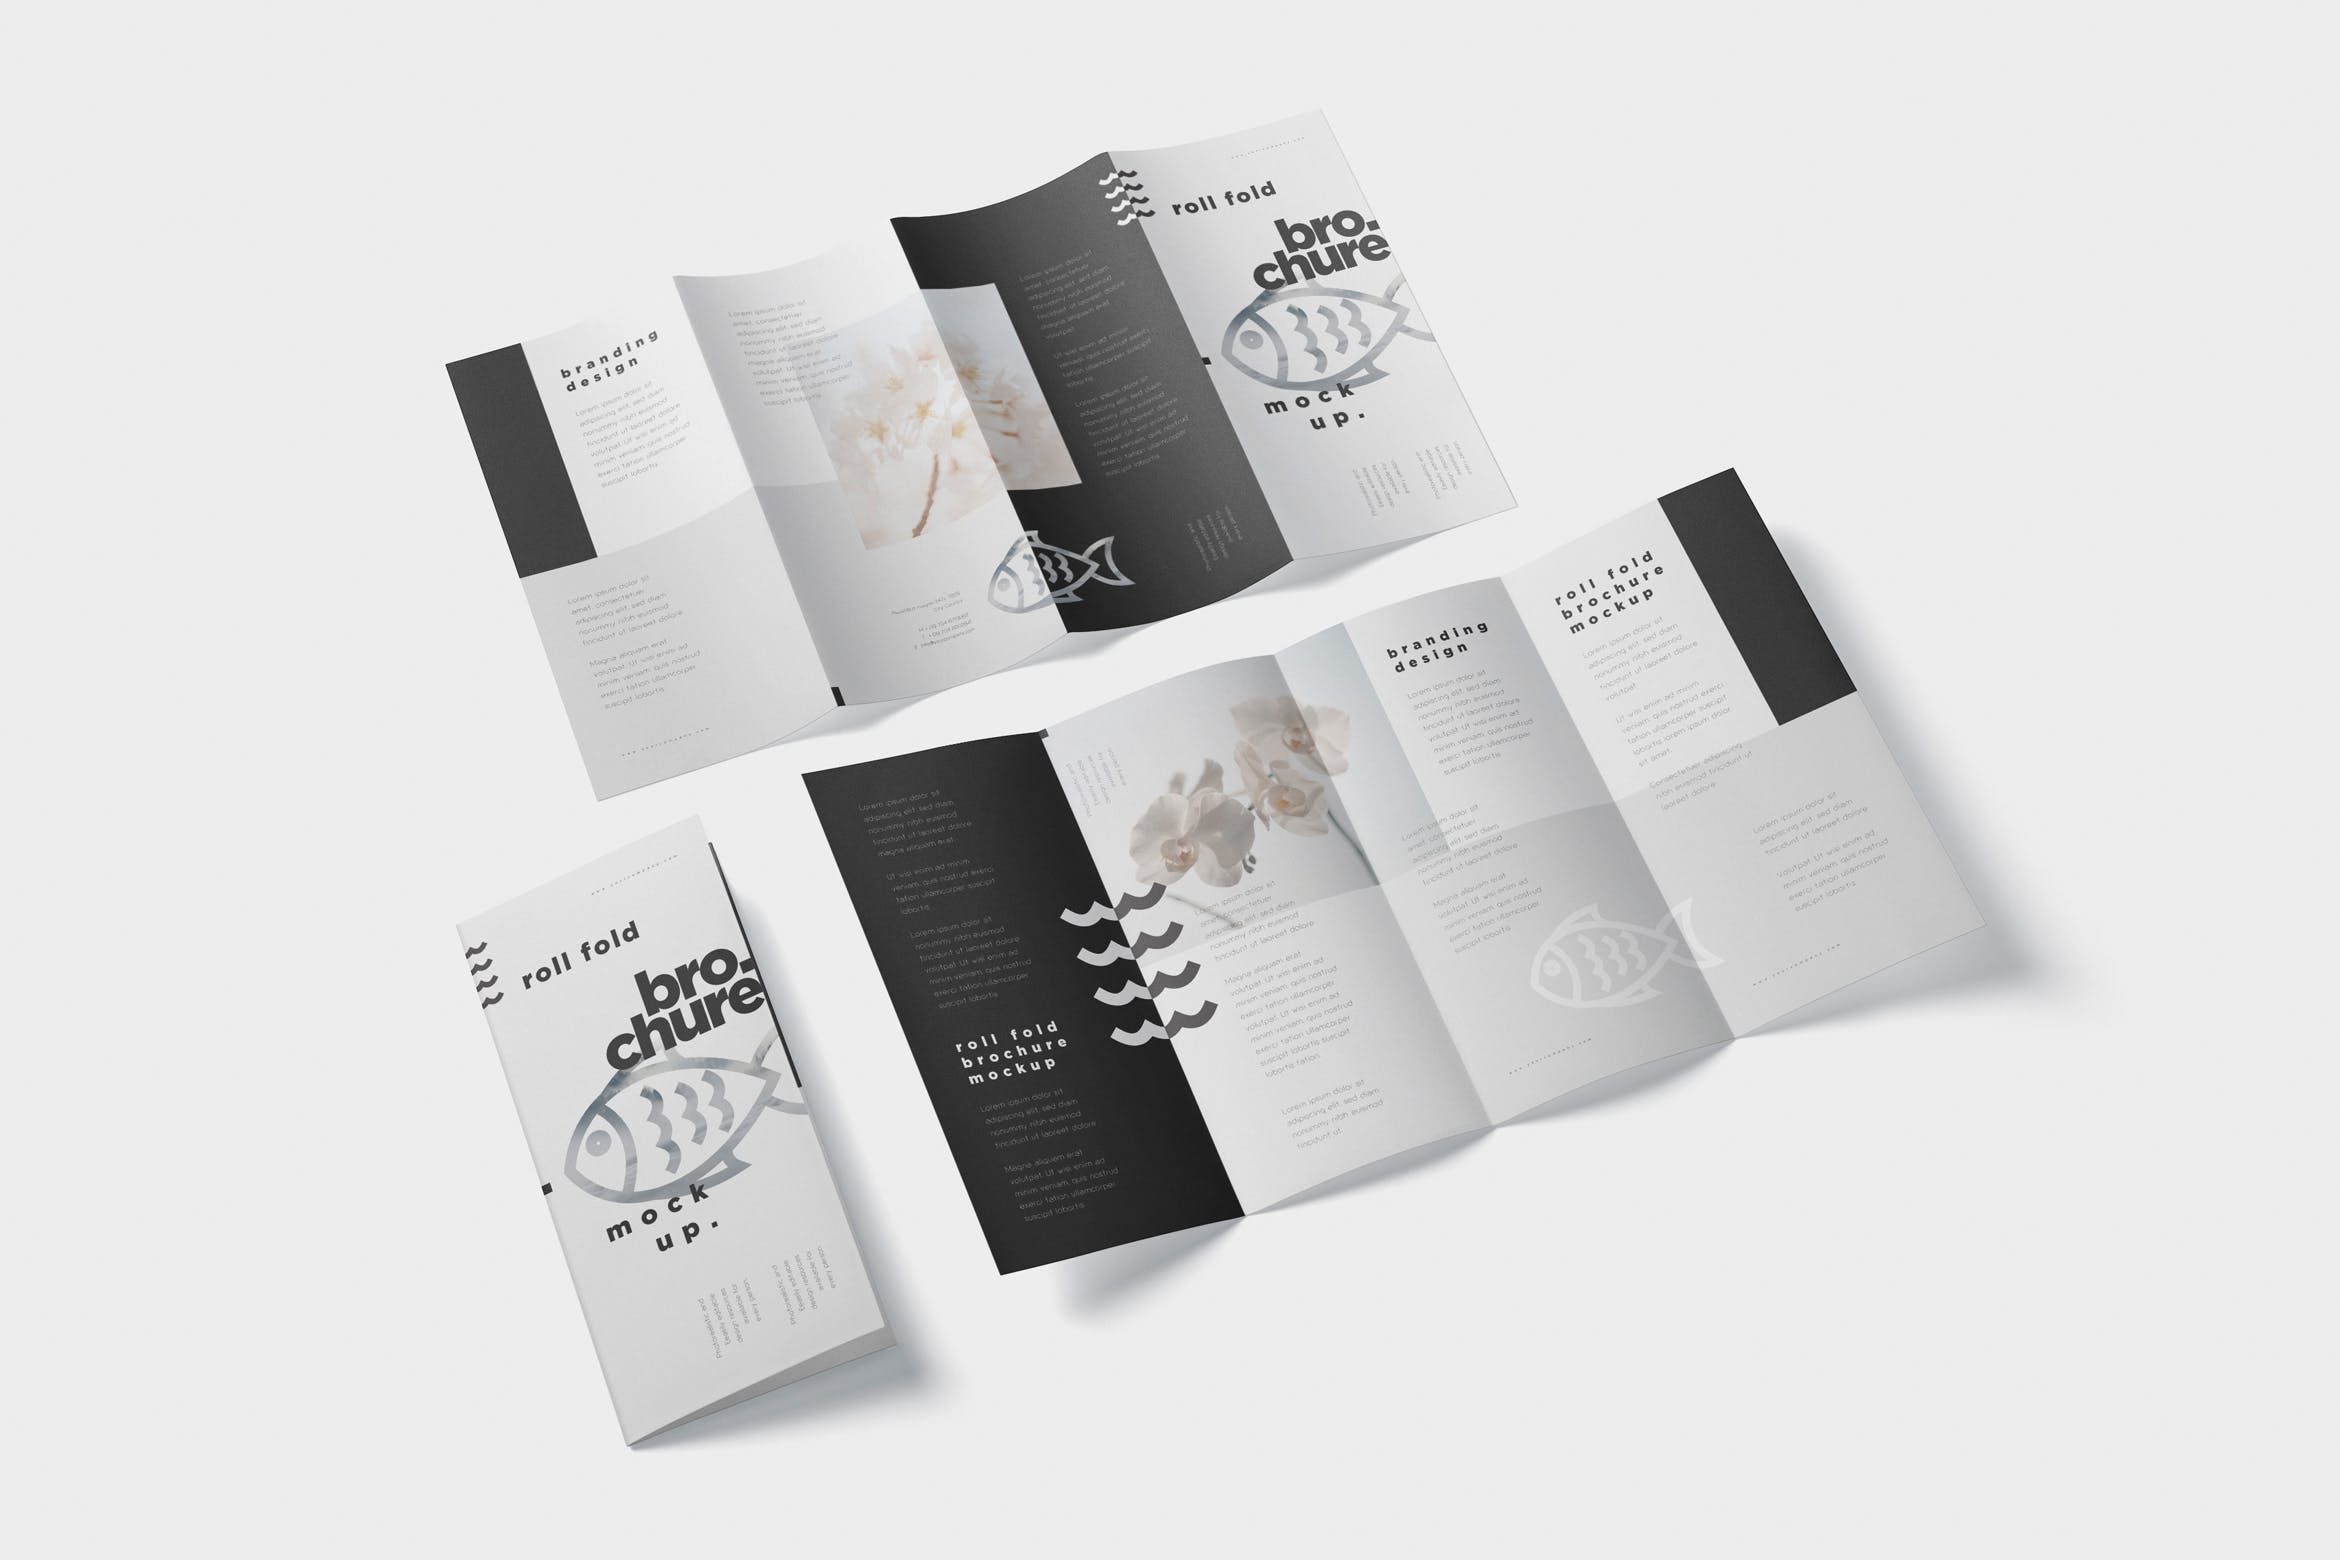 折叠设计风格企业传单/宣传册设计样机大洋岛精选 Roll-Fold Brochure Mockup – DL DIN Lang Size插图